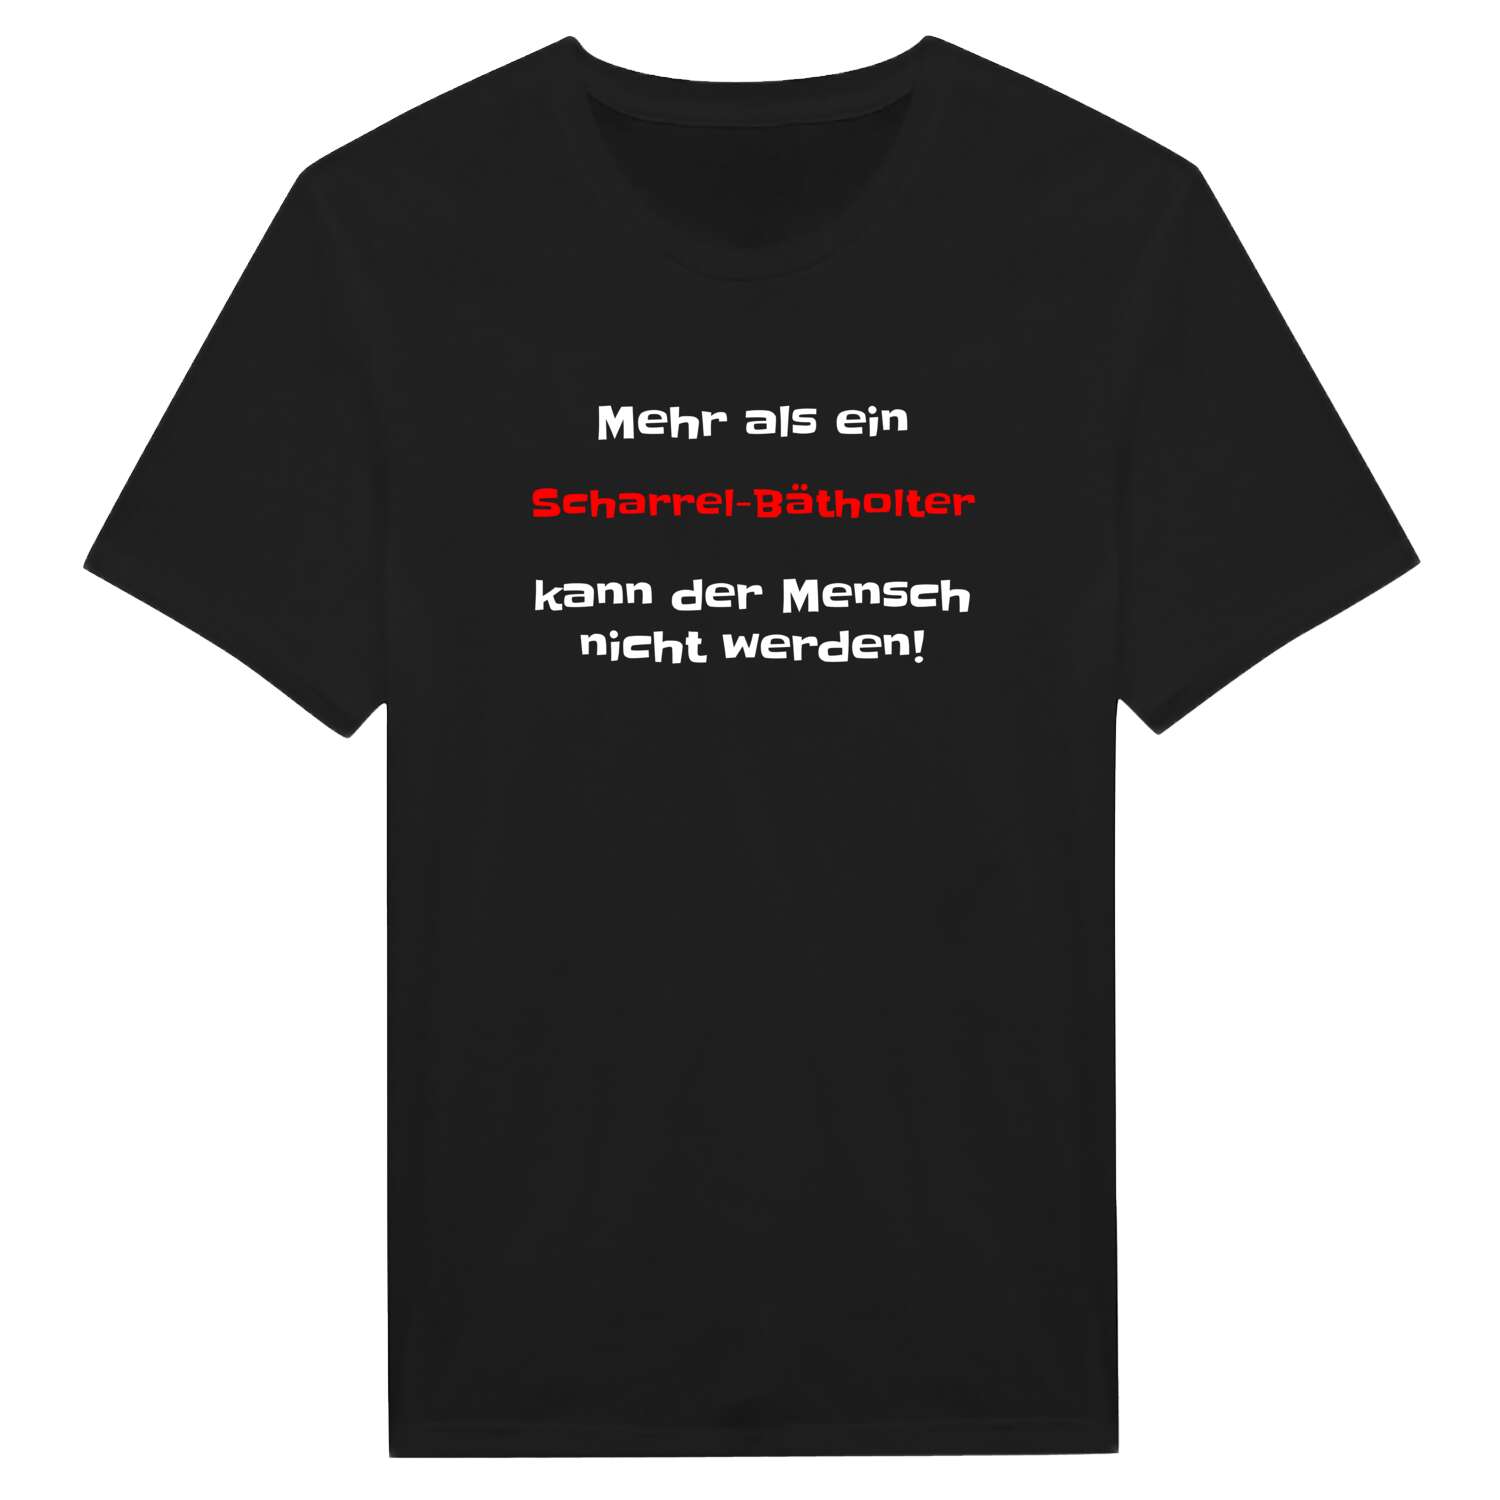 Scharrel-Bätholt T-Shirt »Mehr als ein«